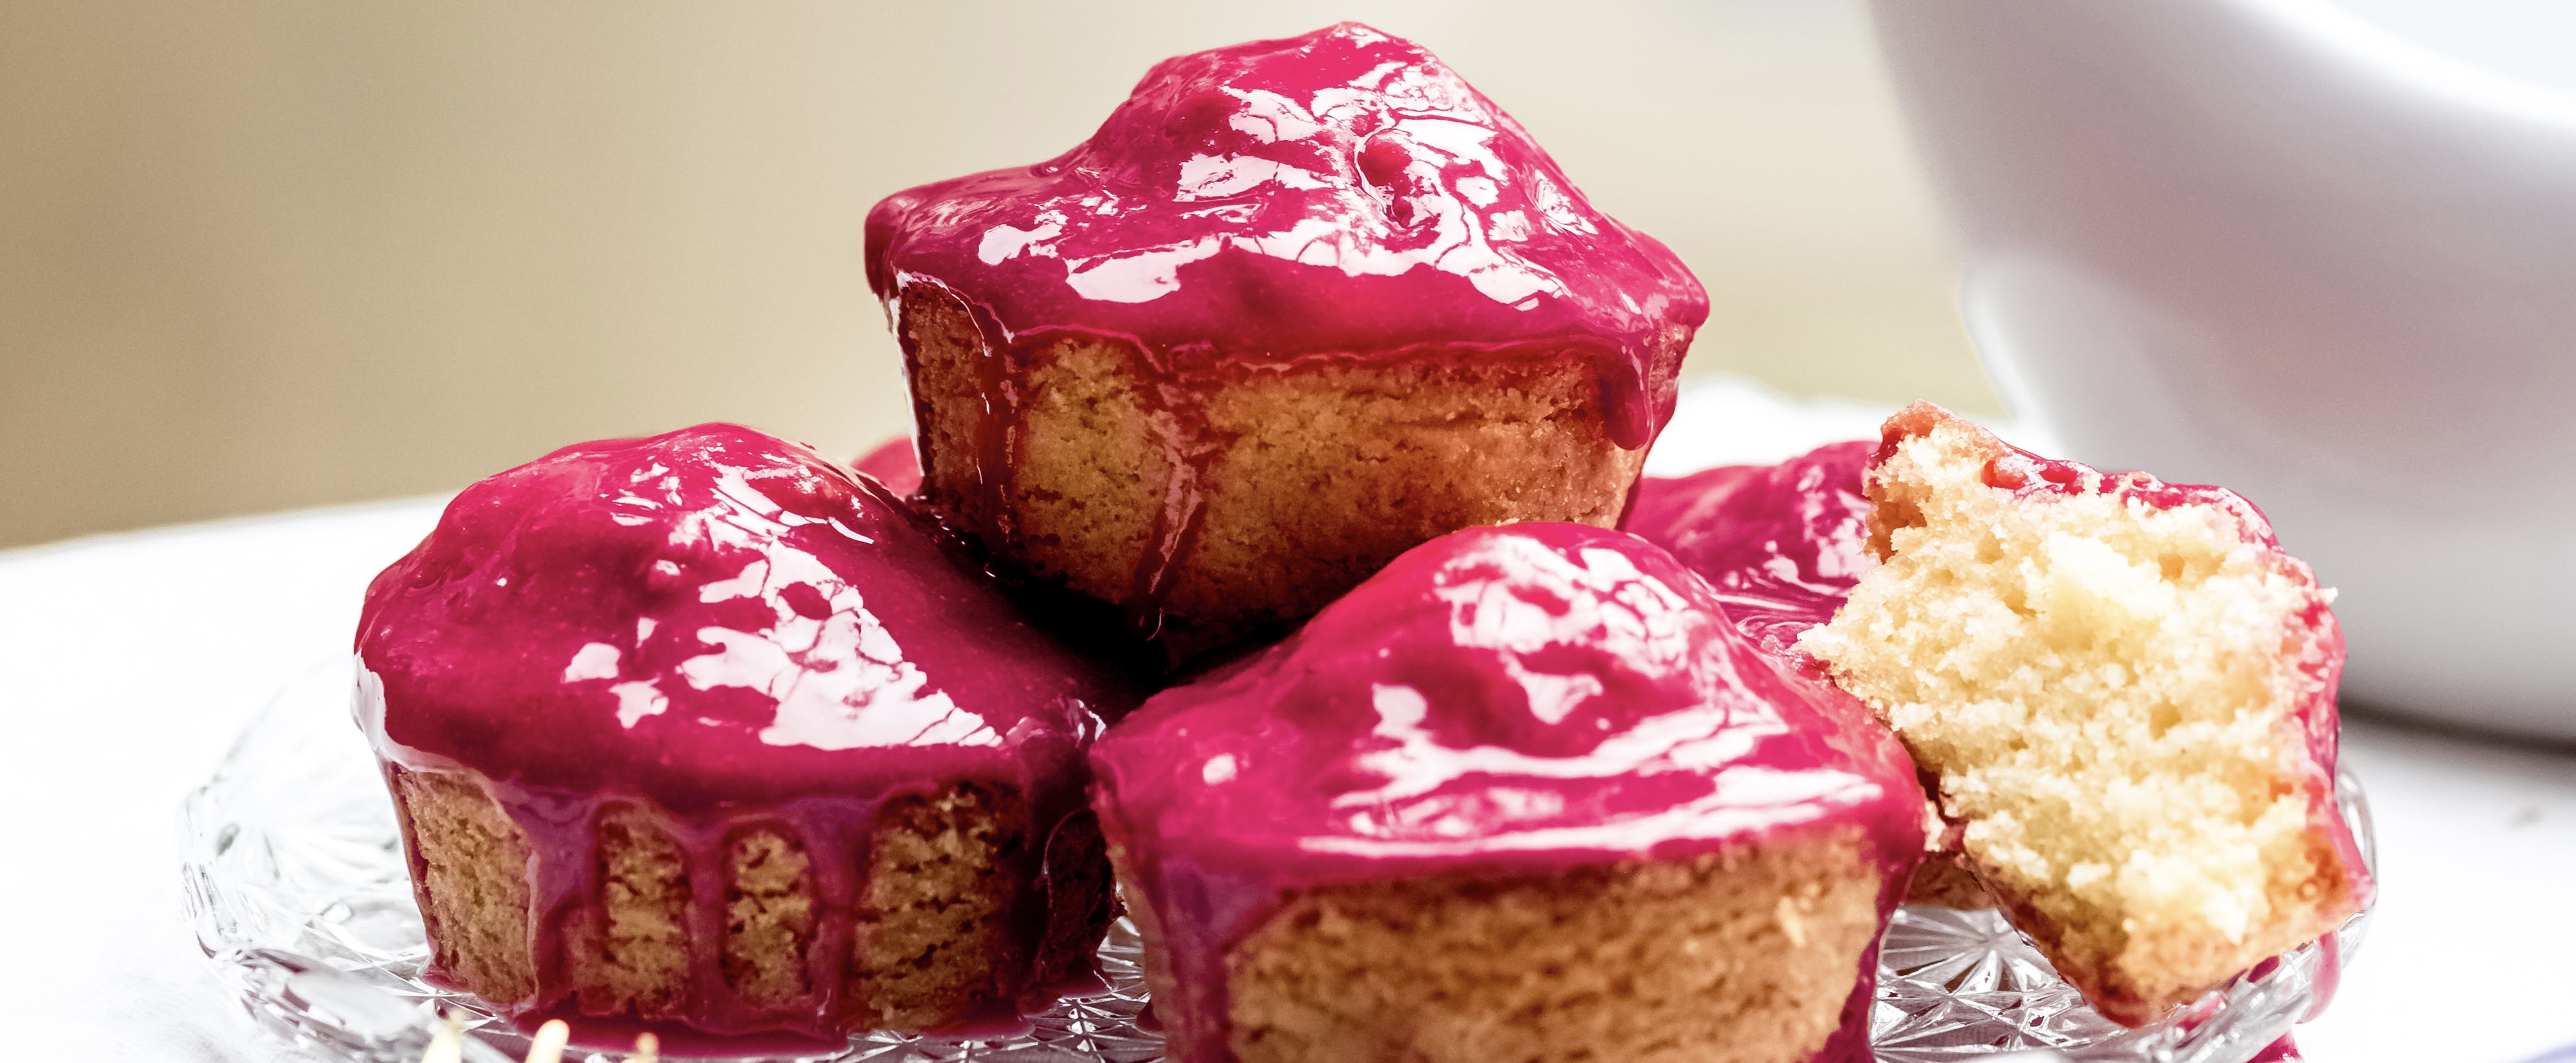 Fokking makkelijk recept: van deze roze koek muffins krijg je nooit genoeg